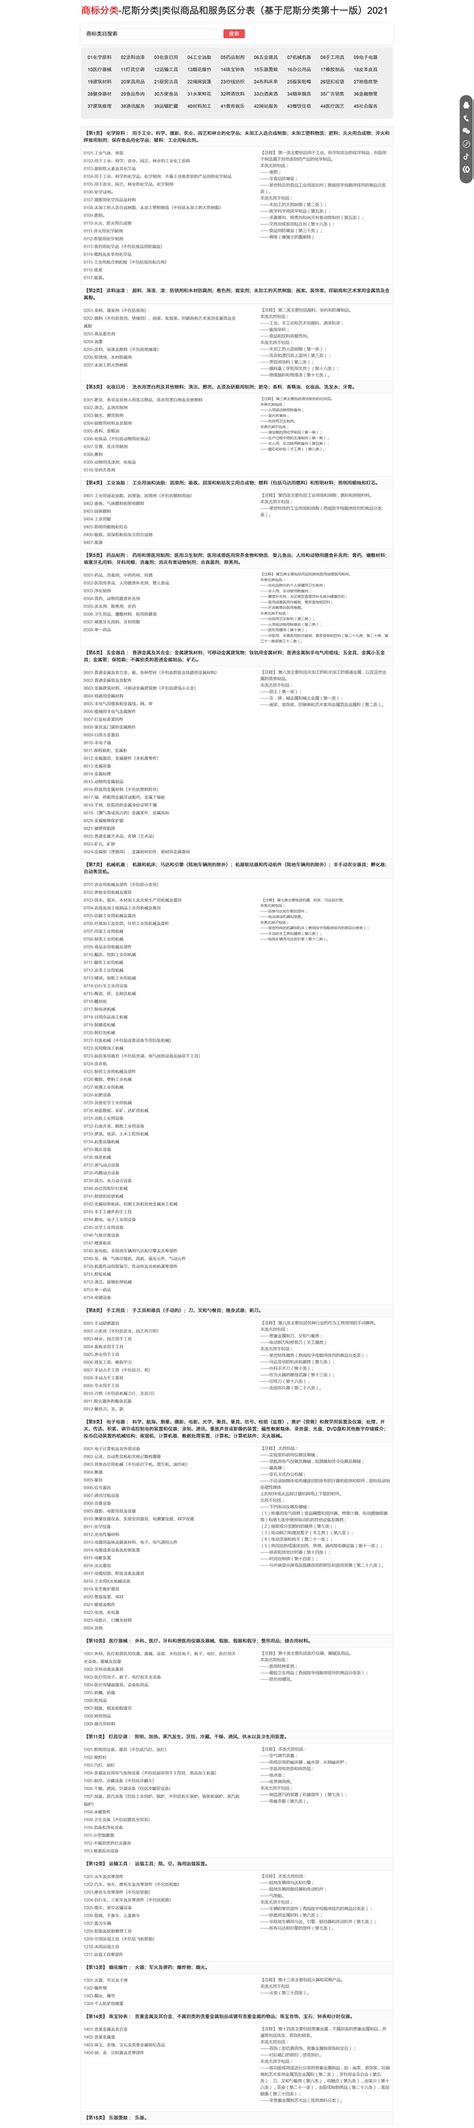 宁波 商标分类 -尼斯分类|类似商品和服务区分表（基于尼斯分类第十一版）2021中山市八喜电脑网络有限公司